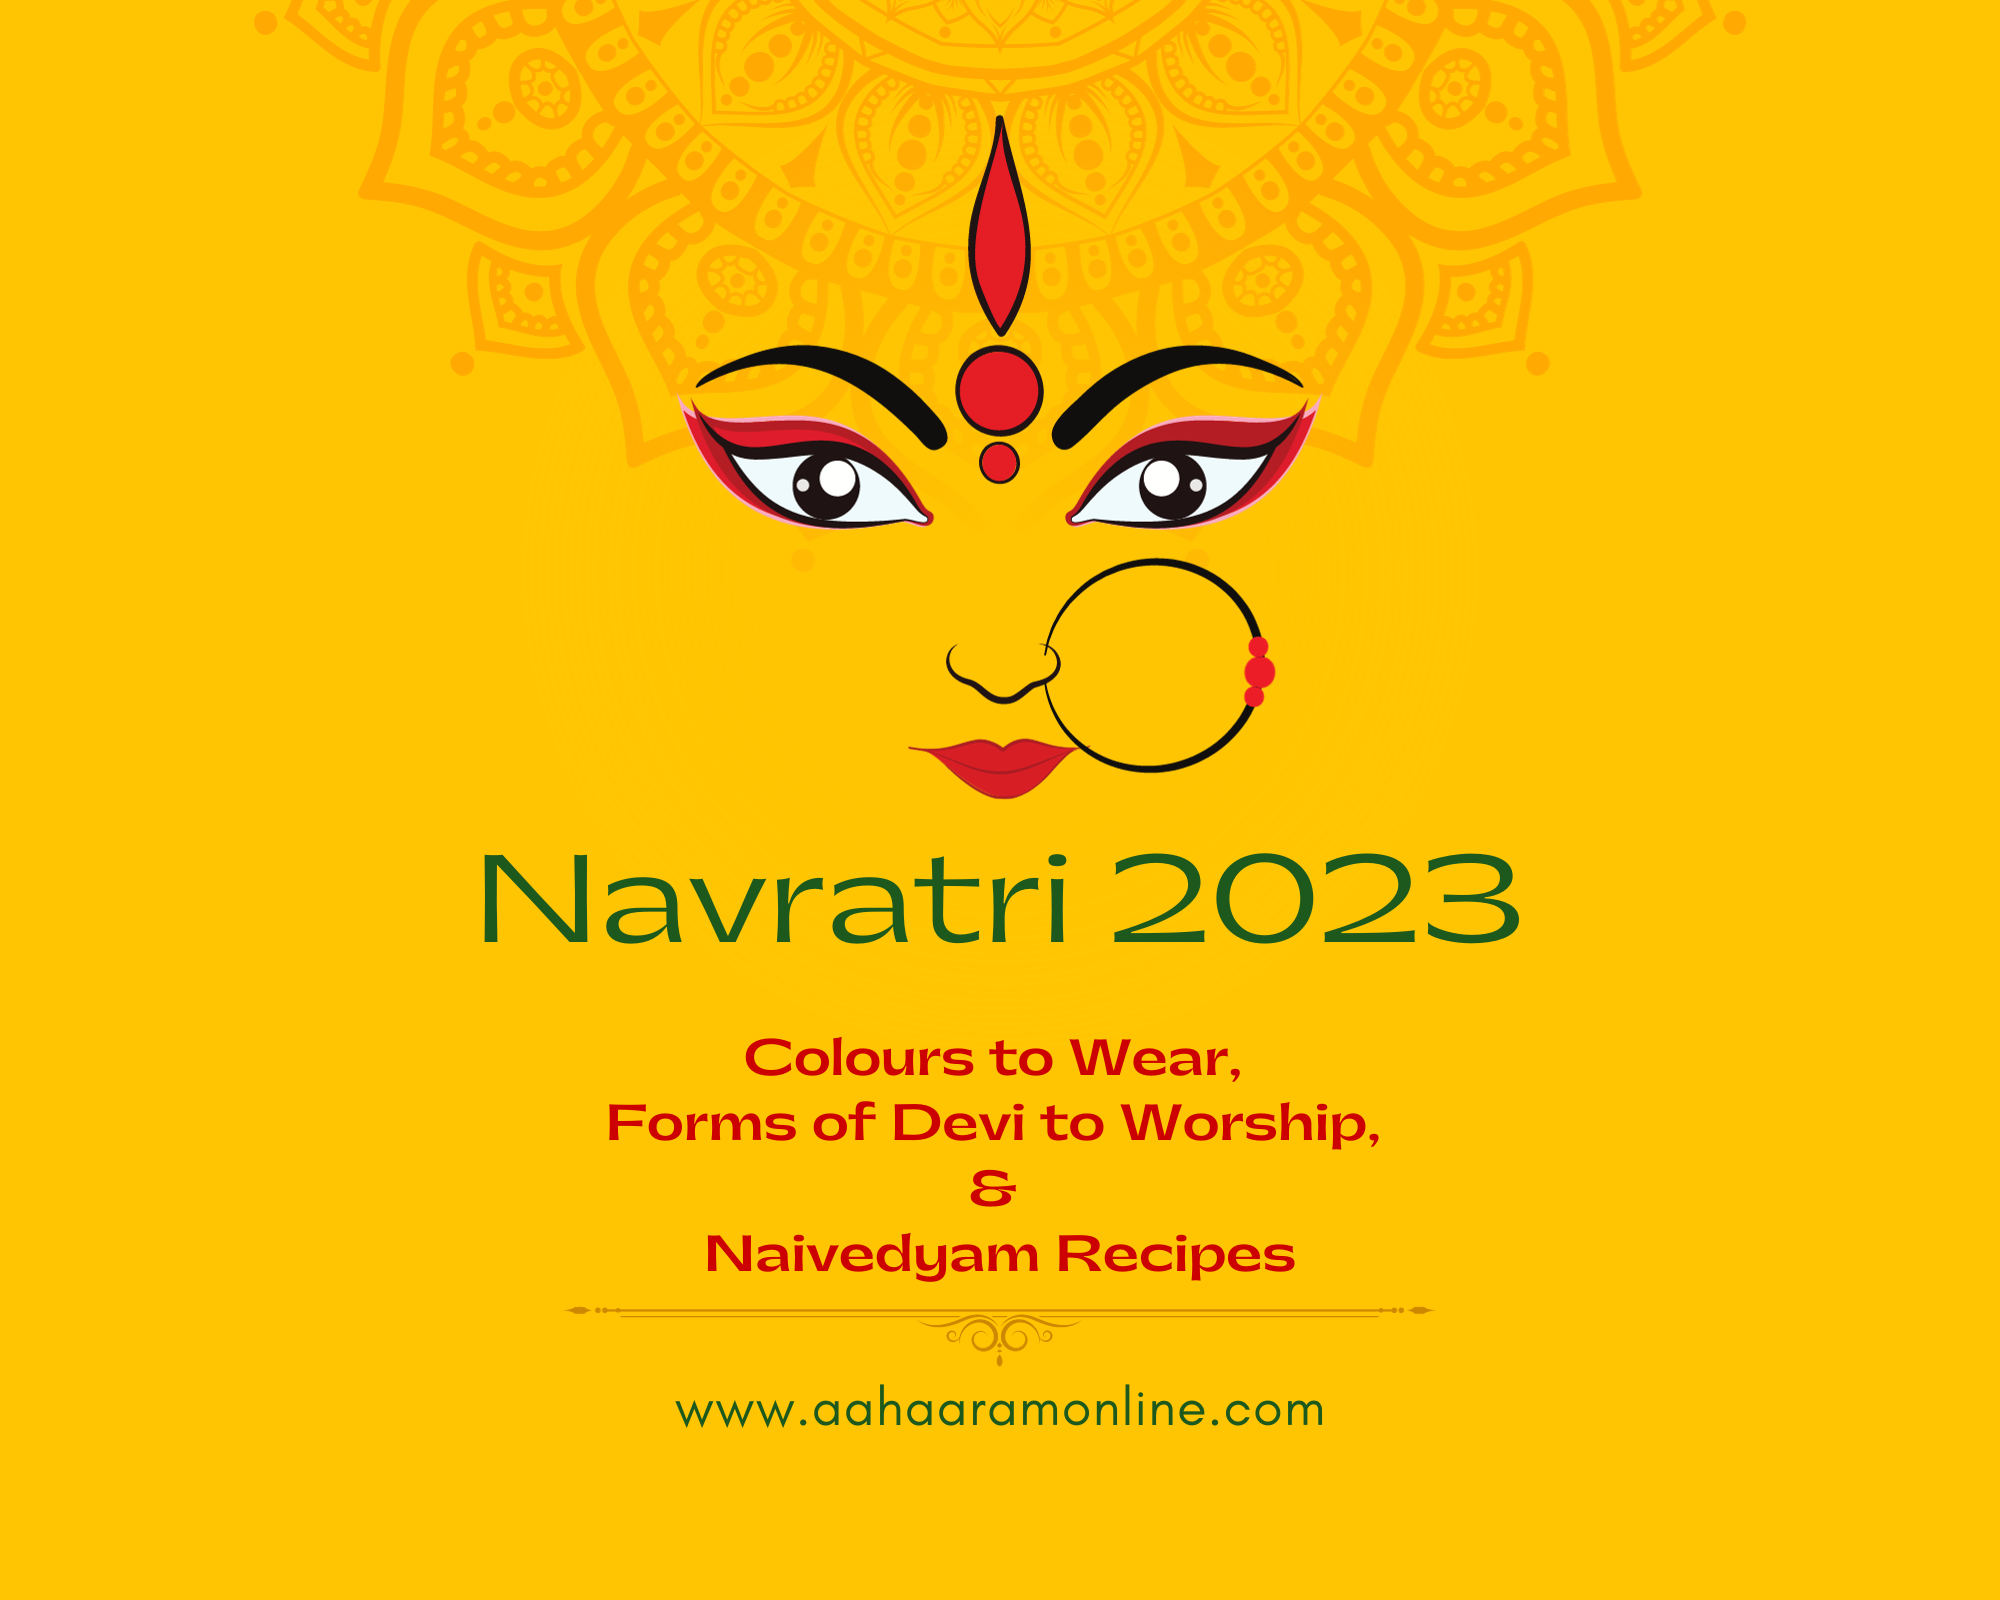 Navaratri celebration, 2021 - Vidhyadeep University